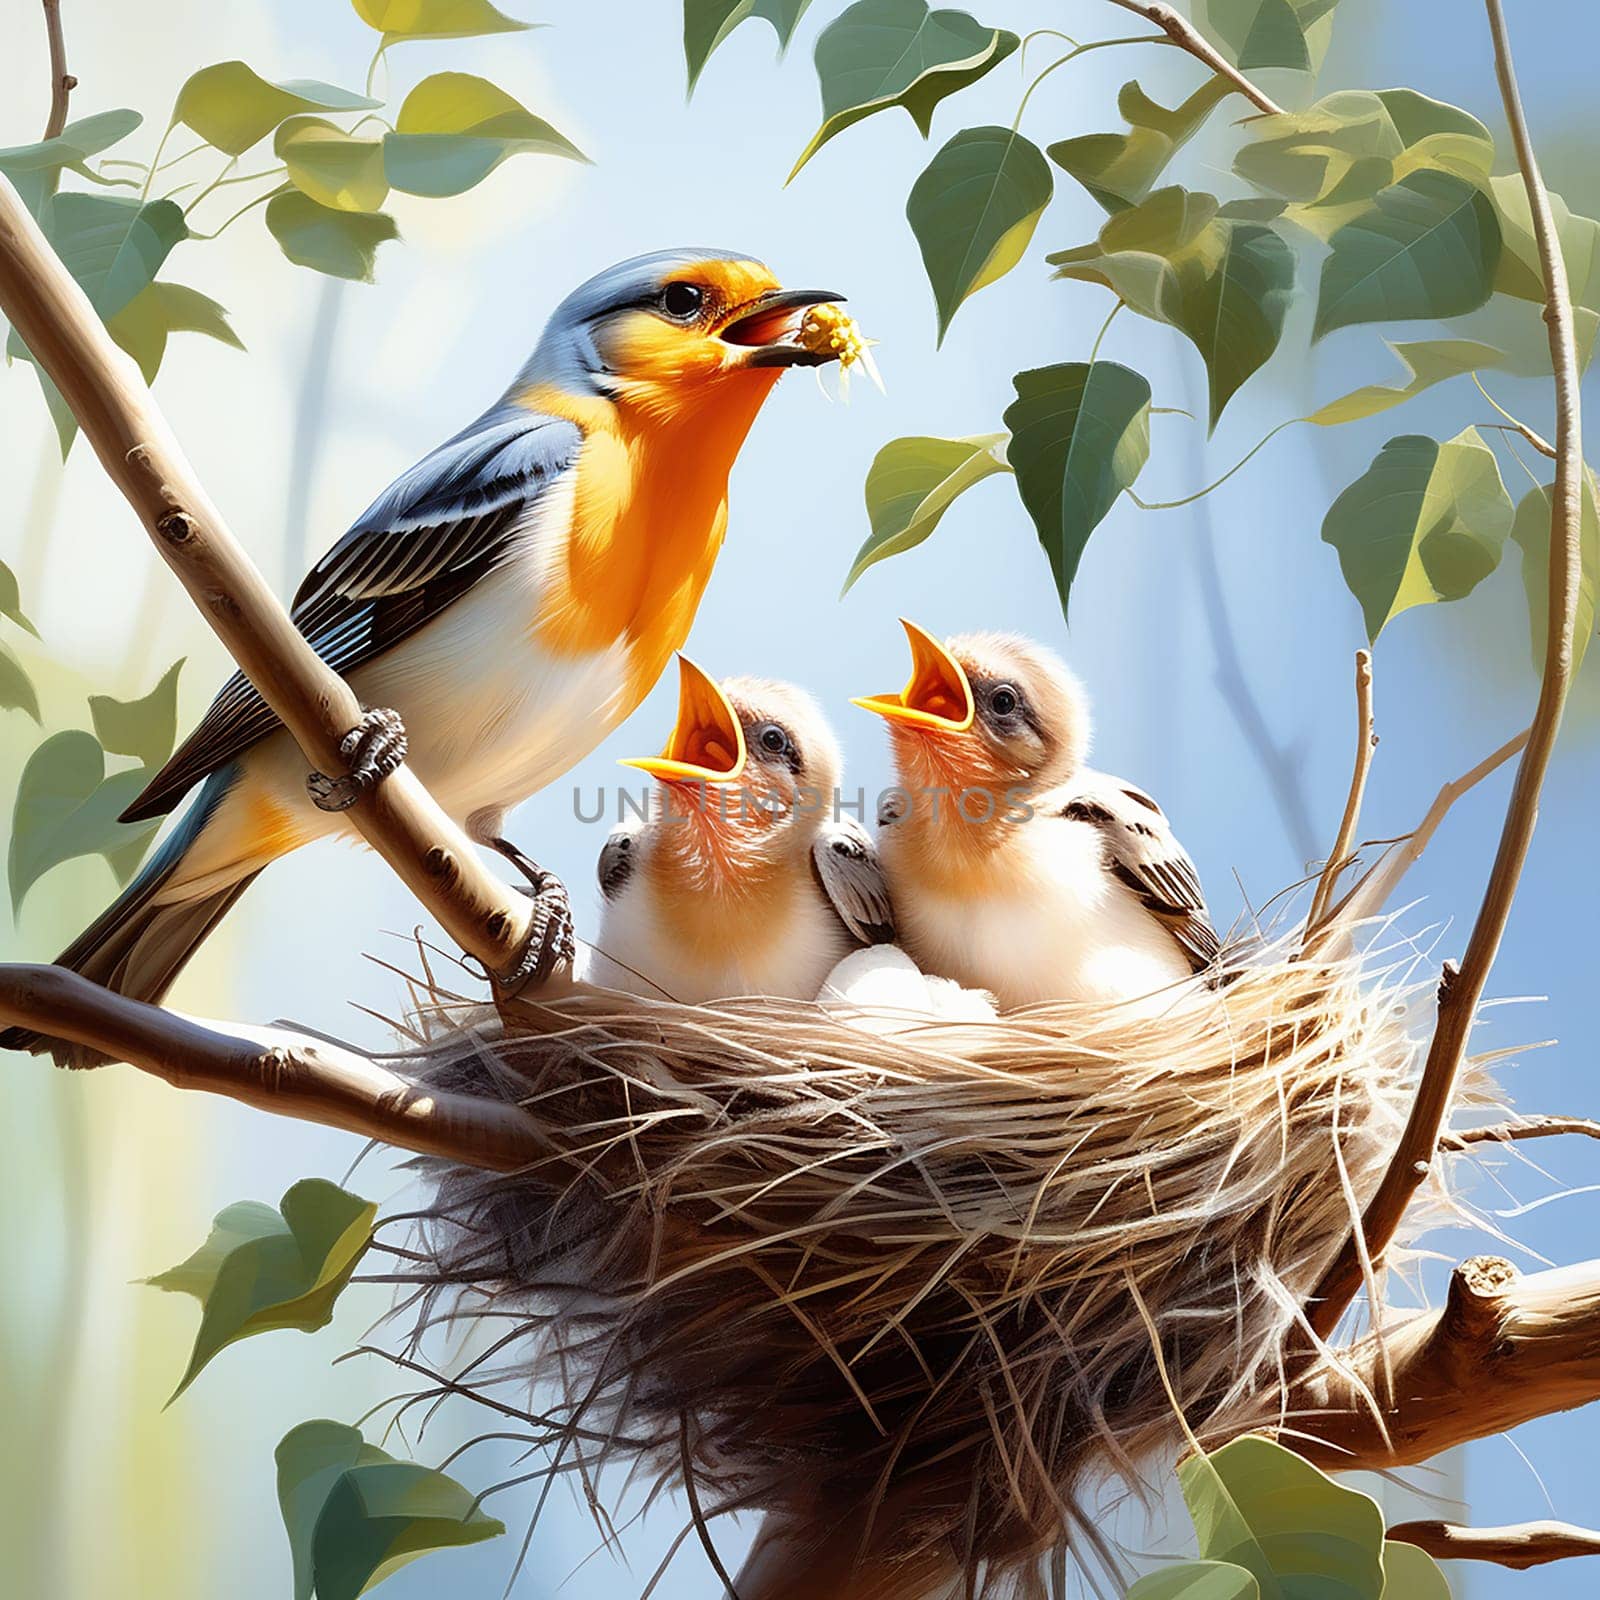 Nature's Nurturers: Birds Feeding Baby in Nest